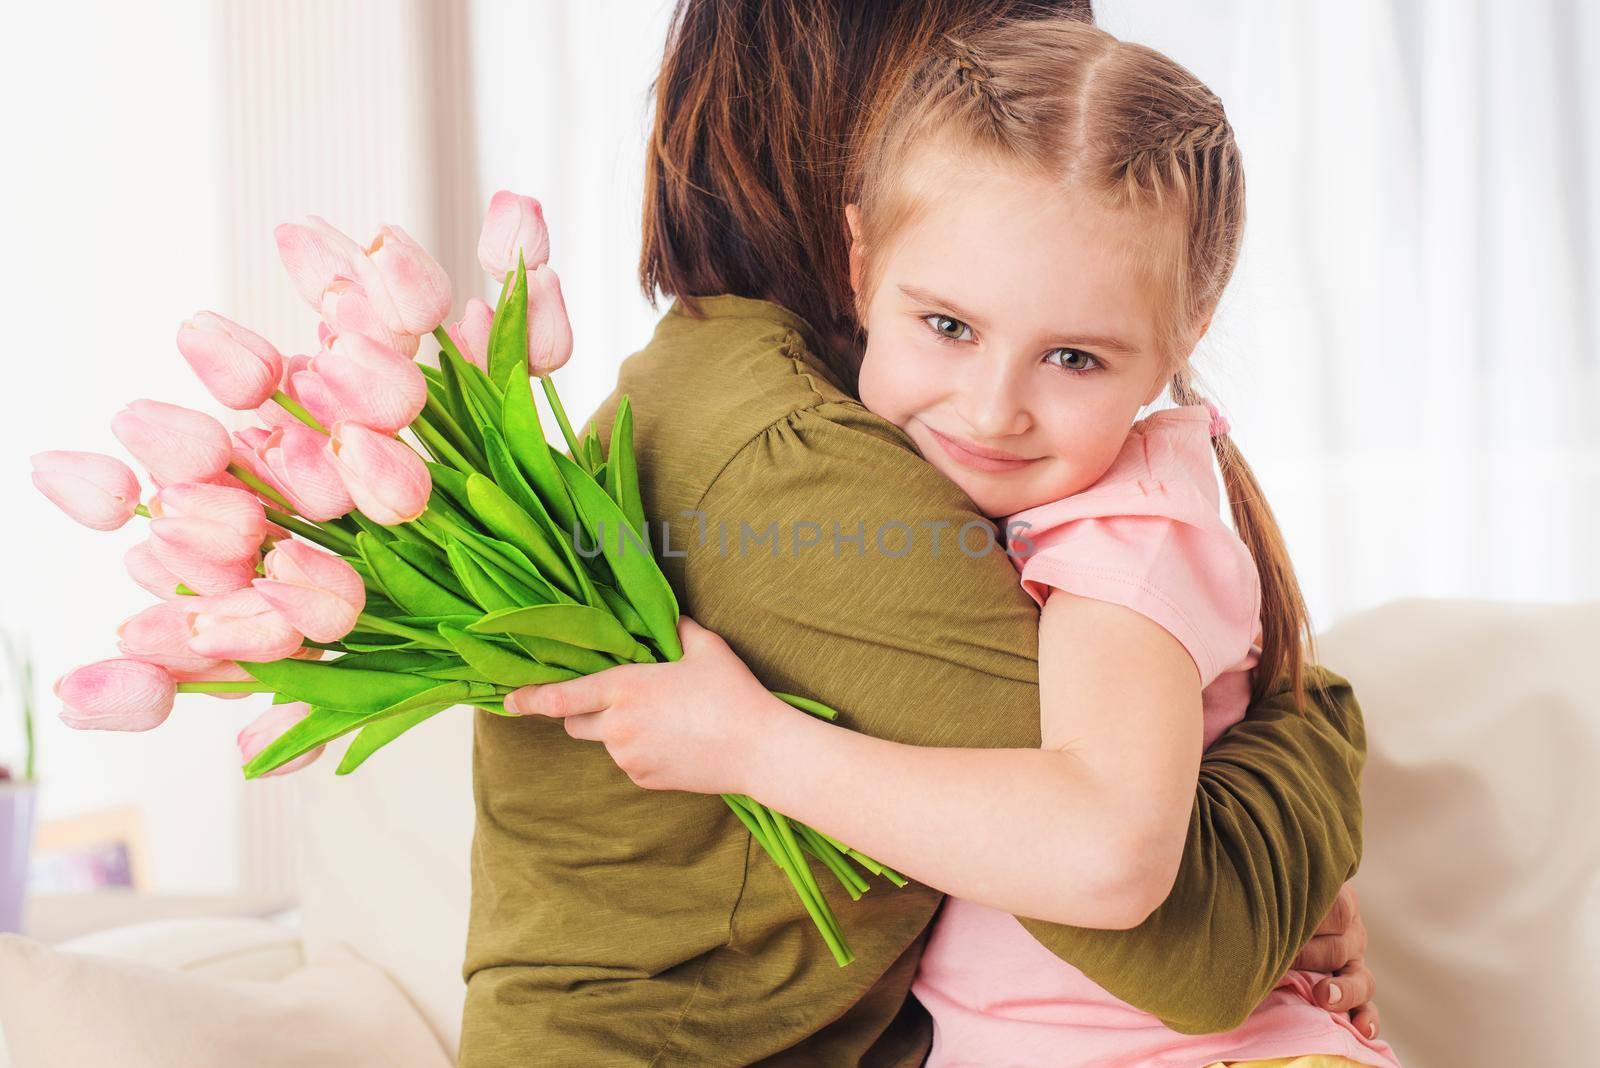 Kid embracing mother, holding flowers by GekaSkr